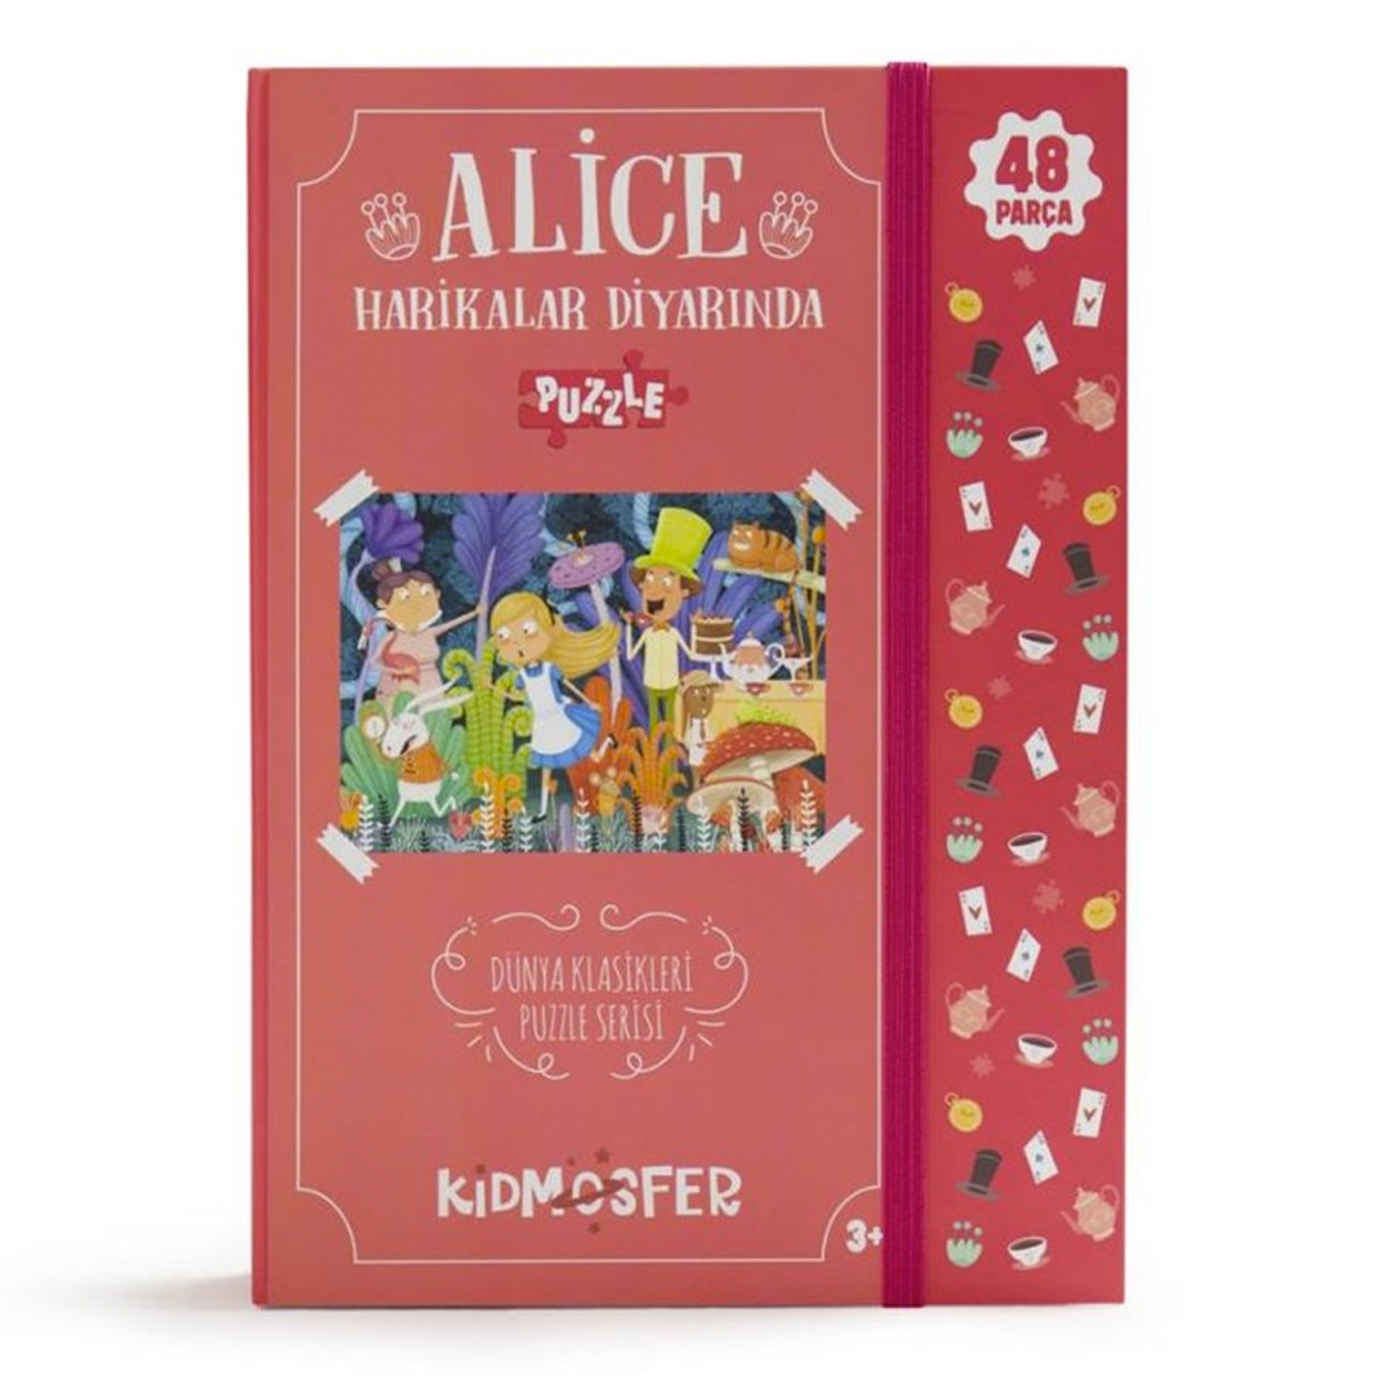 KİDMOSFER Alice Harikalar Diyarında Puzzle 48 Parça